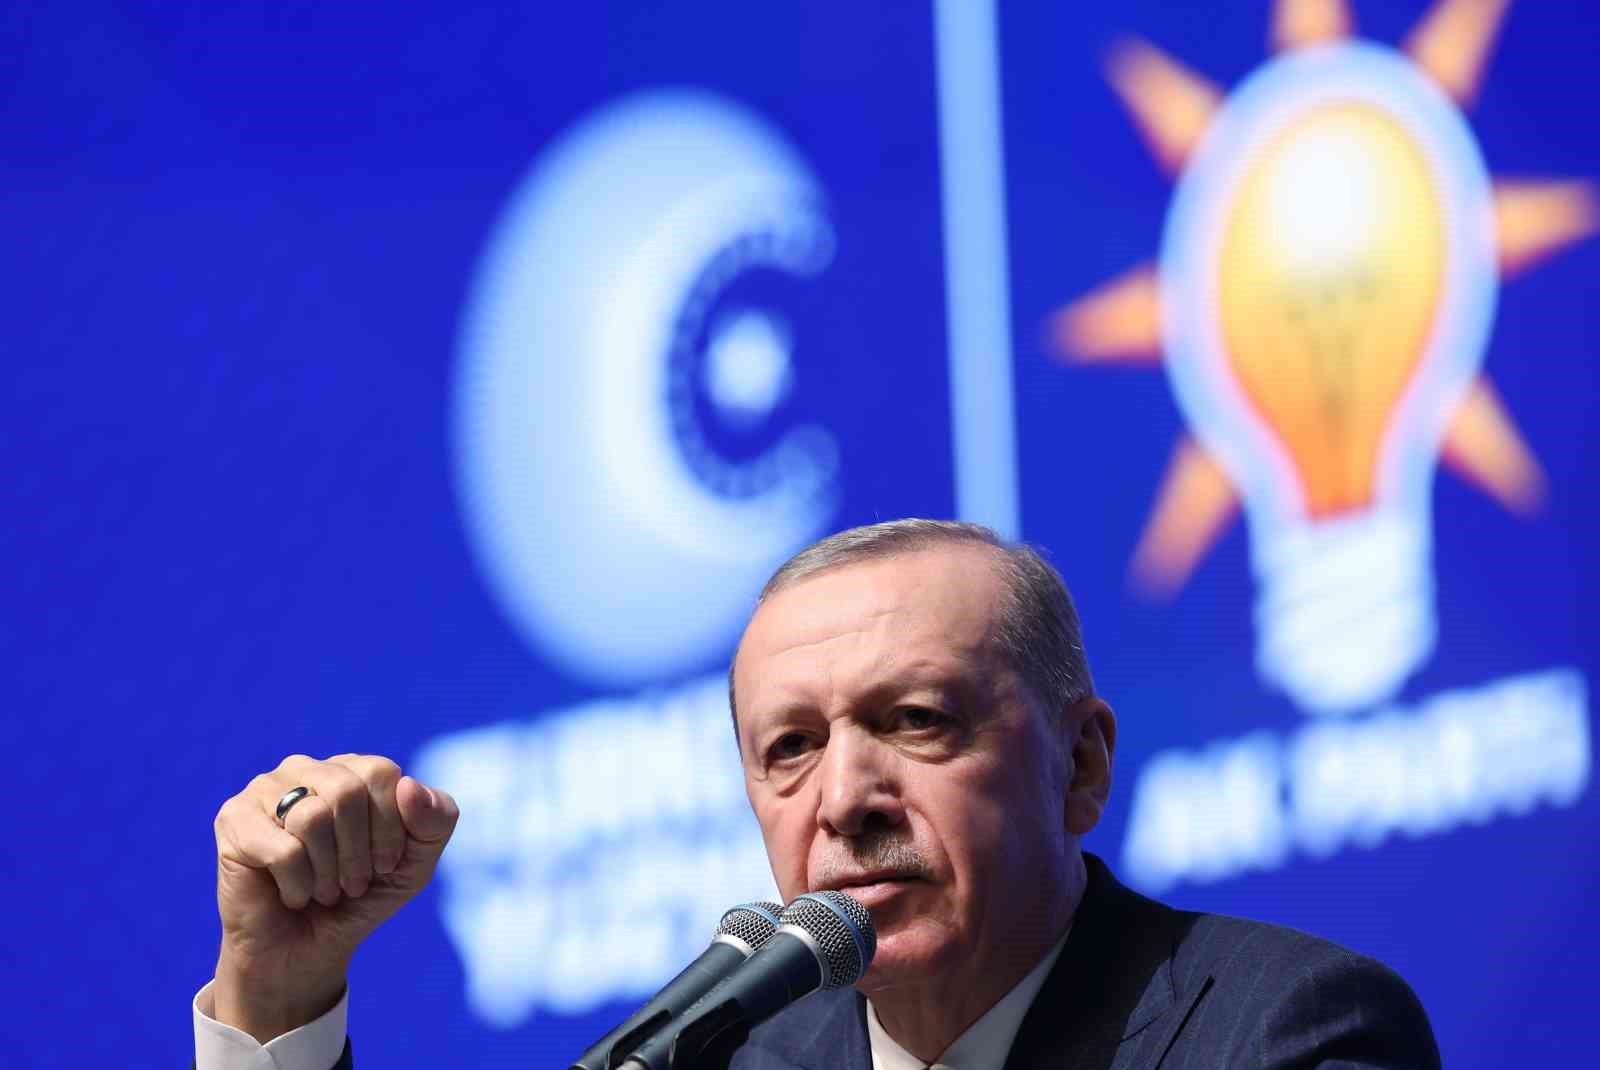 Cumhurbaşkanı Erdoğan’dan Özgür Efendilik Açıklaması: “Vesayetten Kurtararak Özgürleştireceğiz”